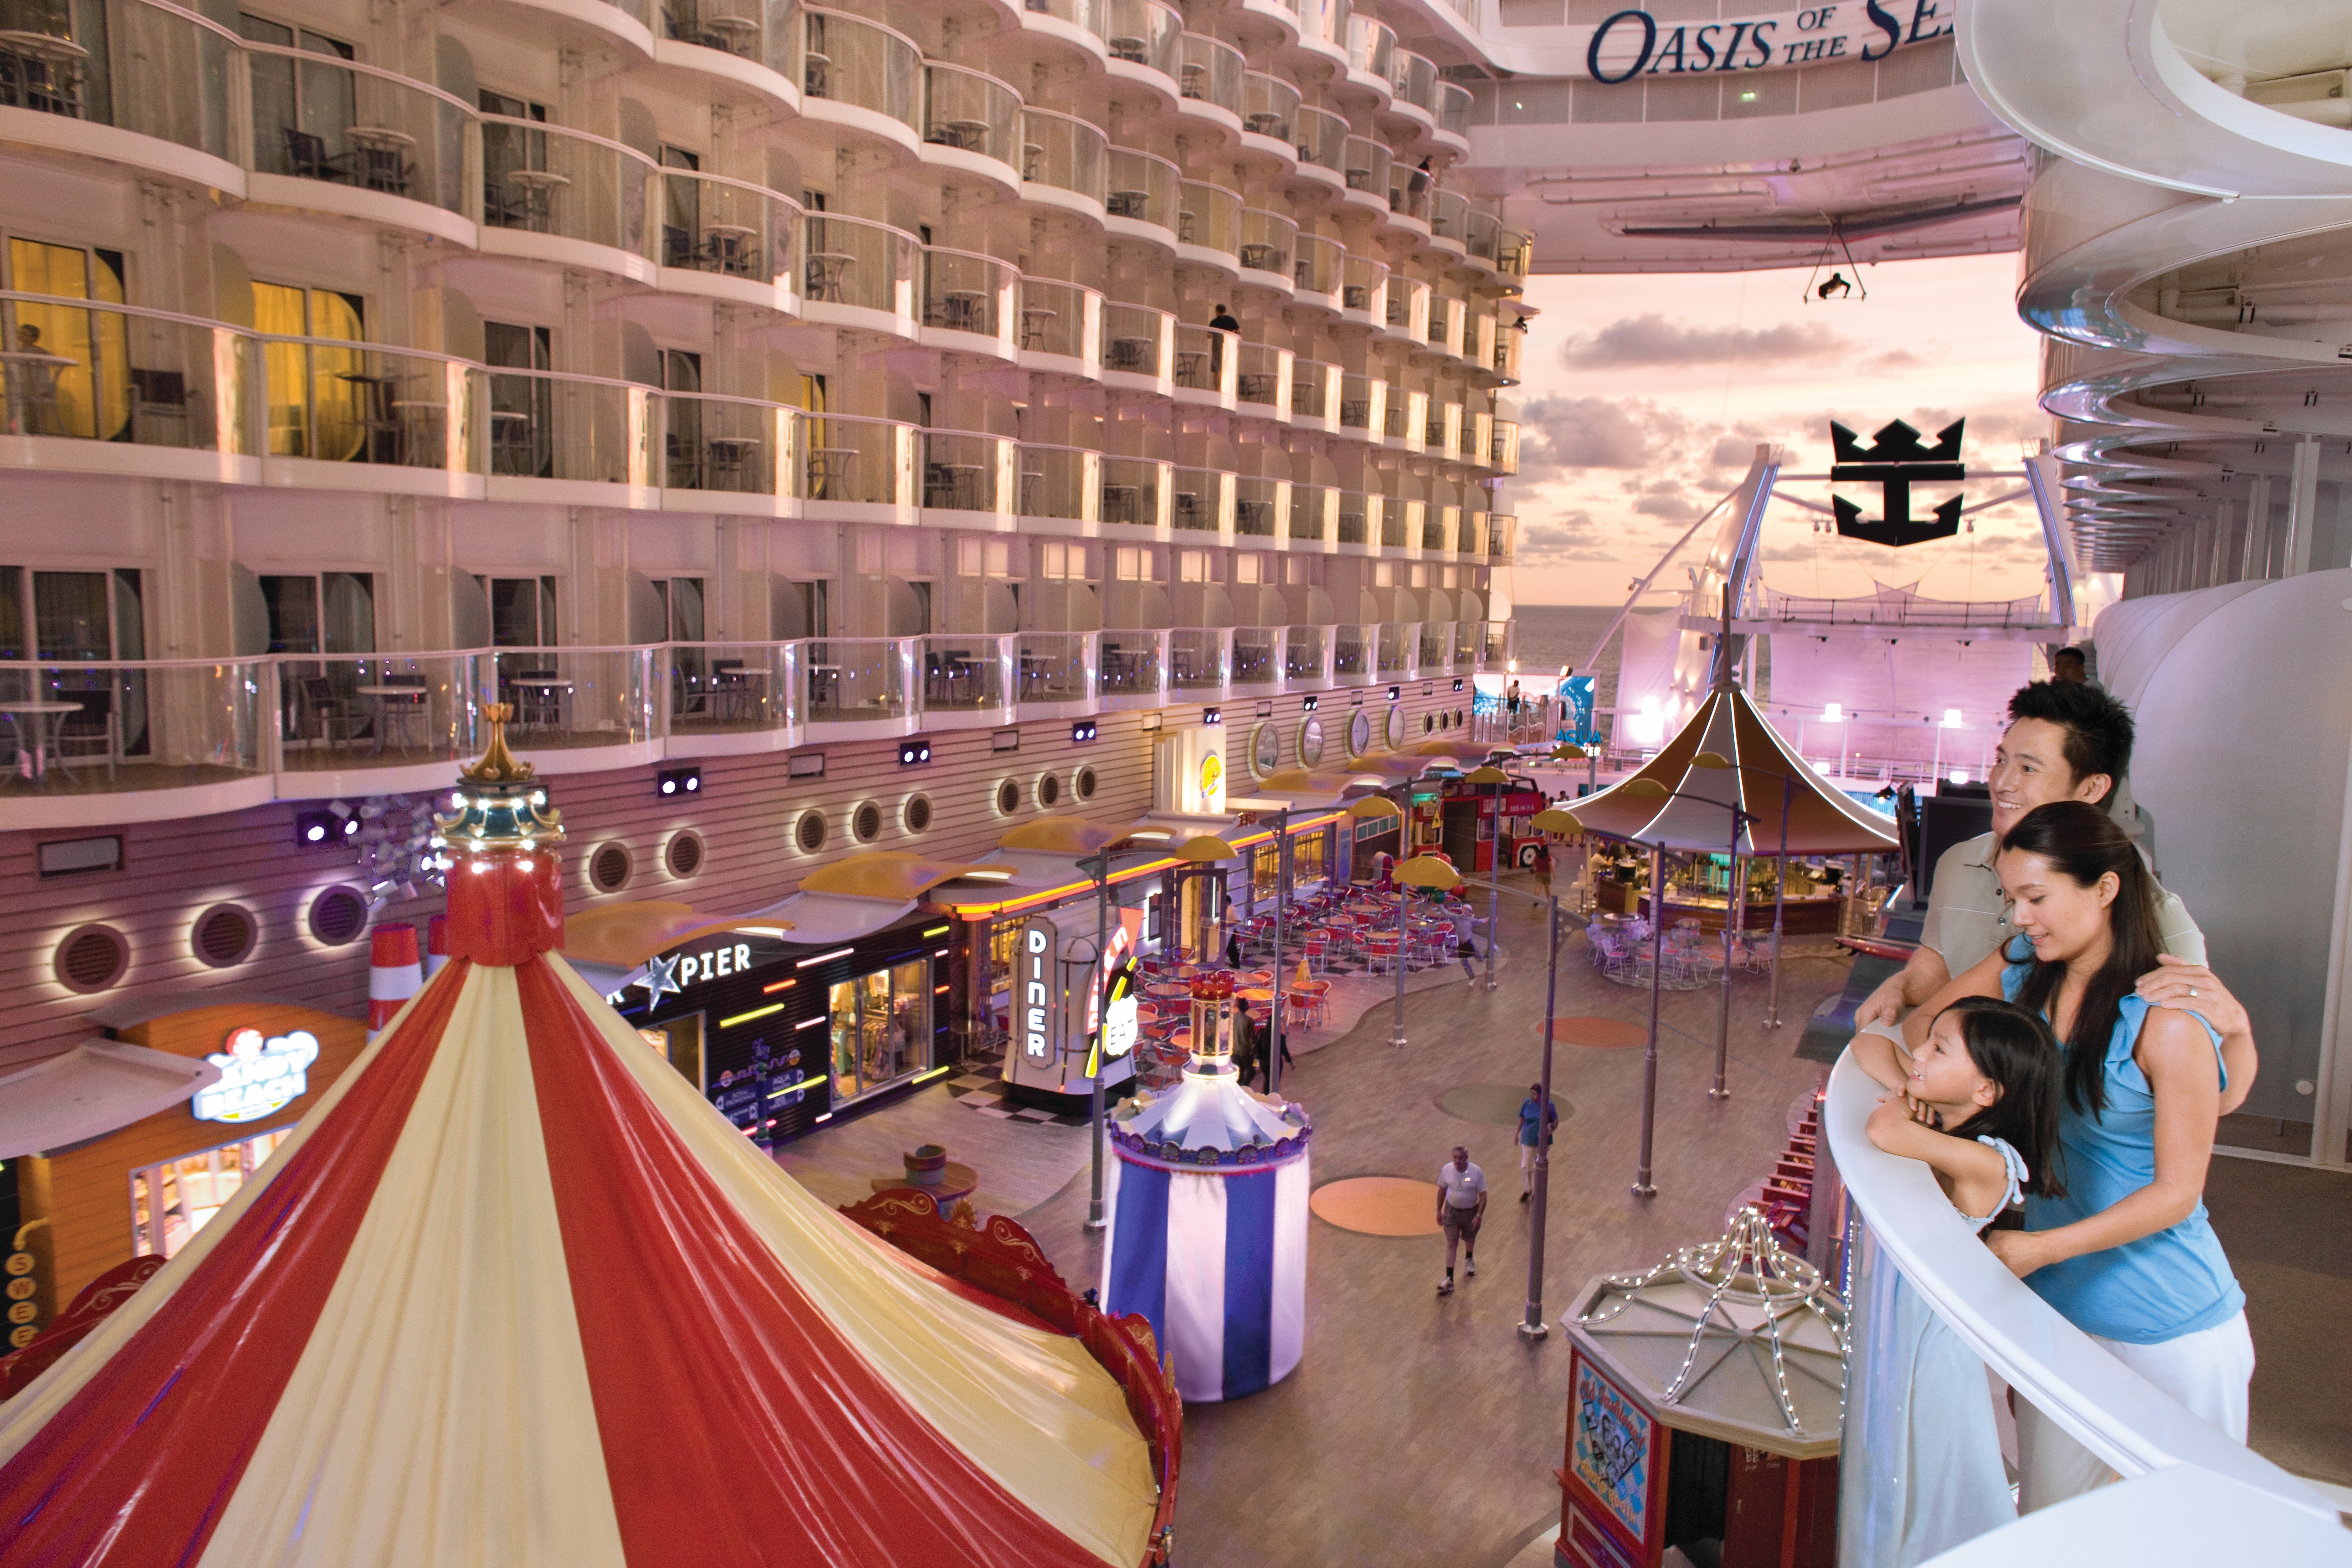 Oasis of the Seas apre le prenotazioni per le crociere in Europa